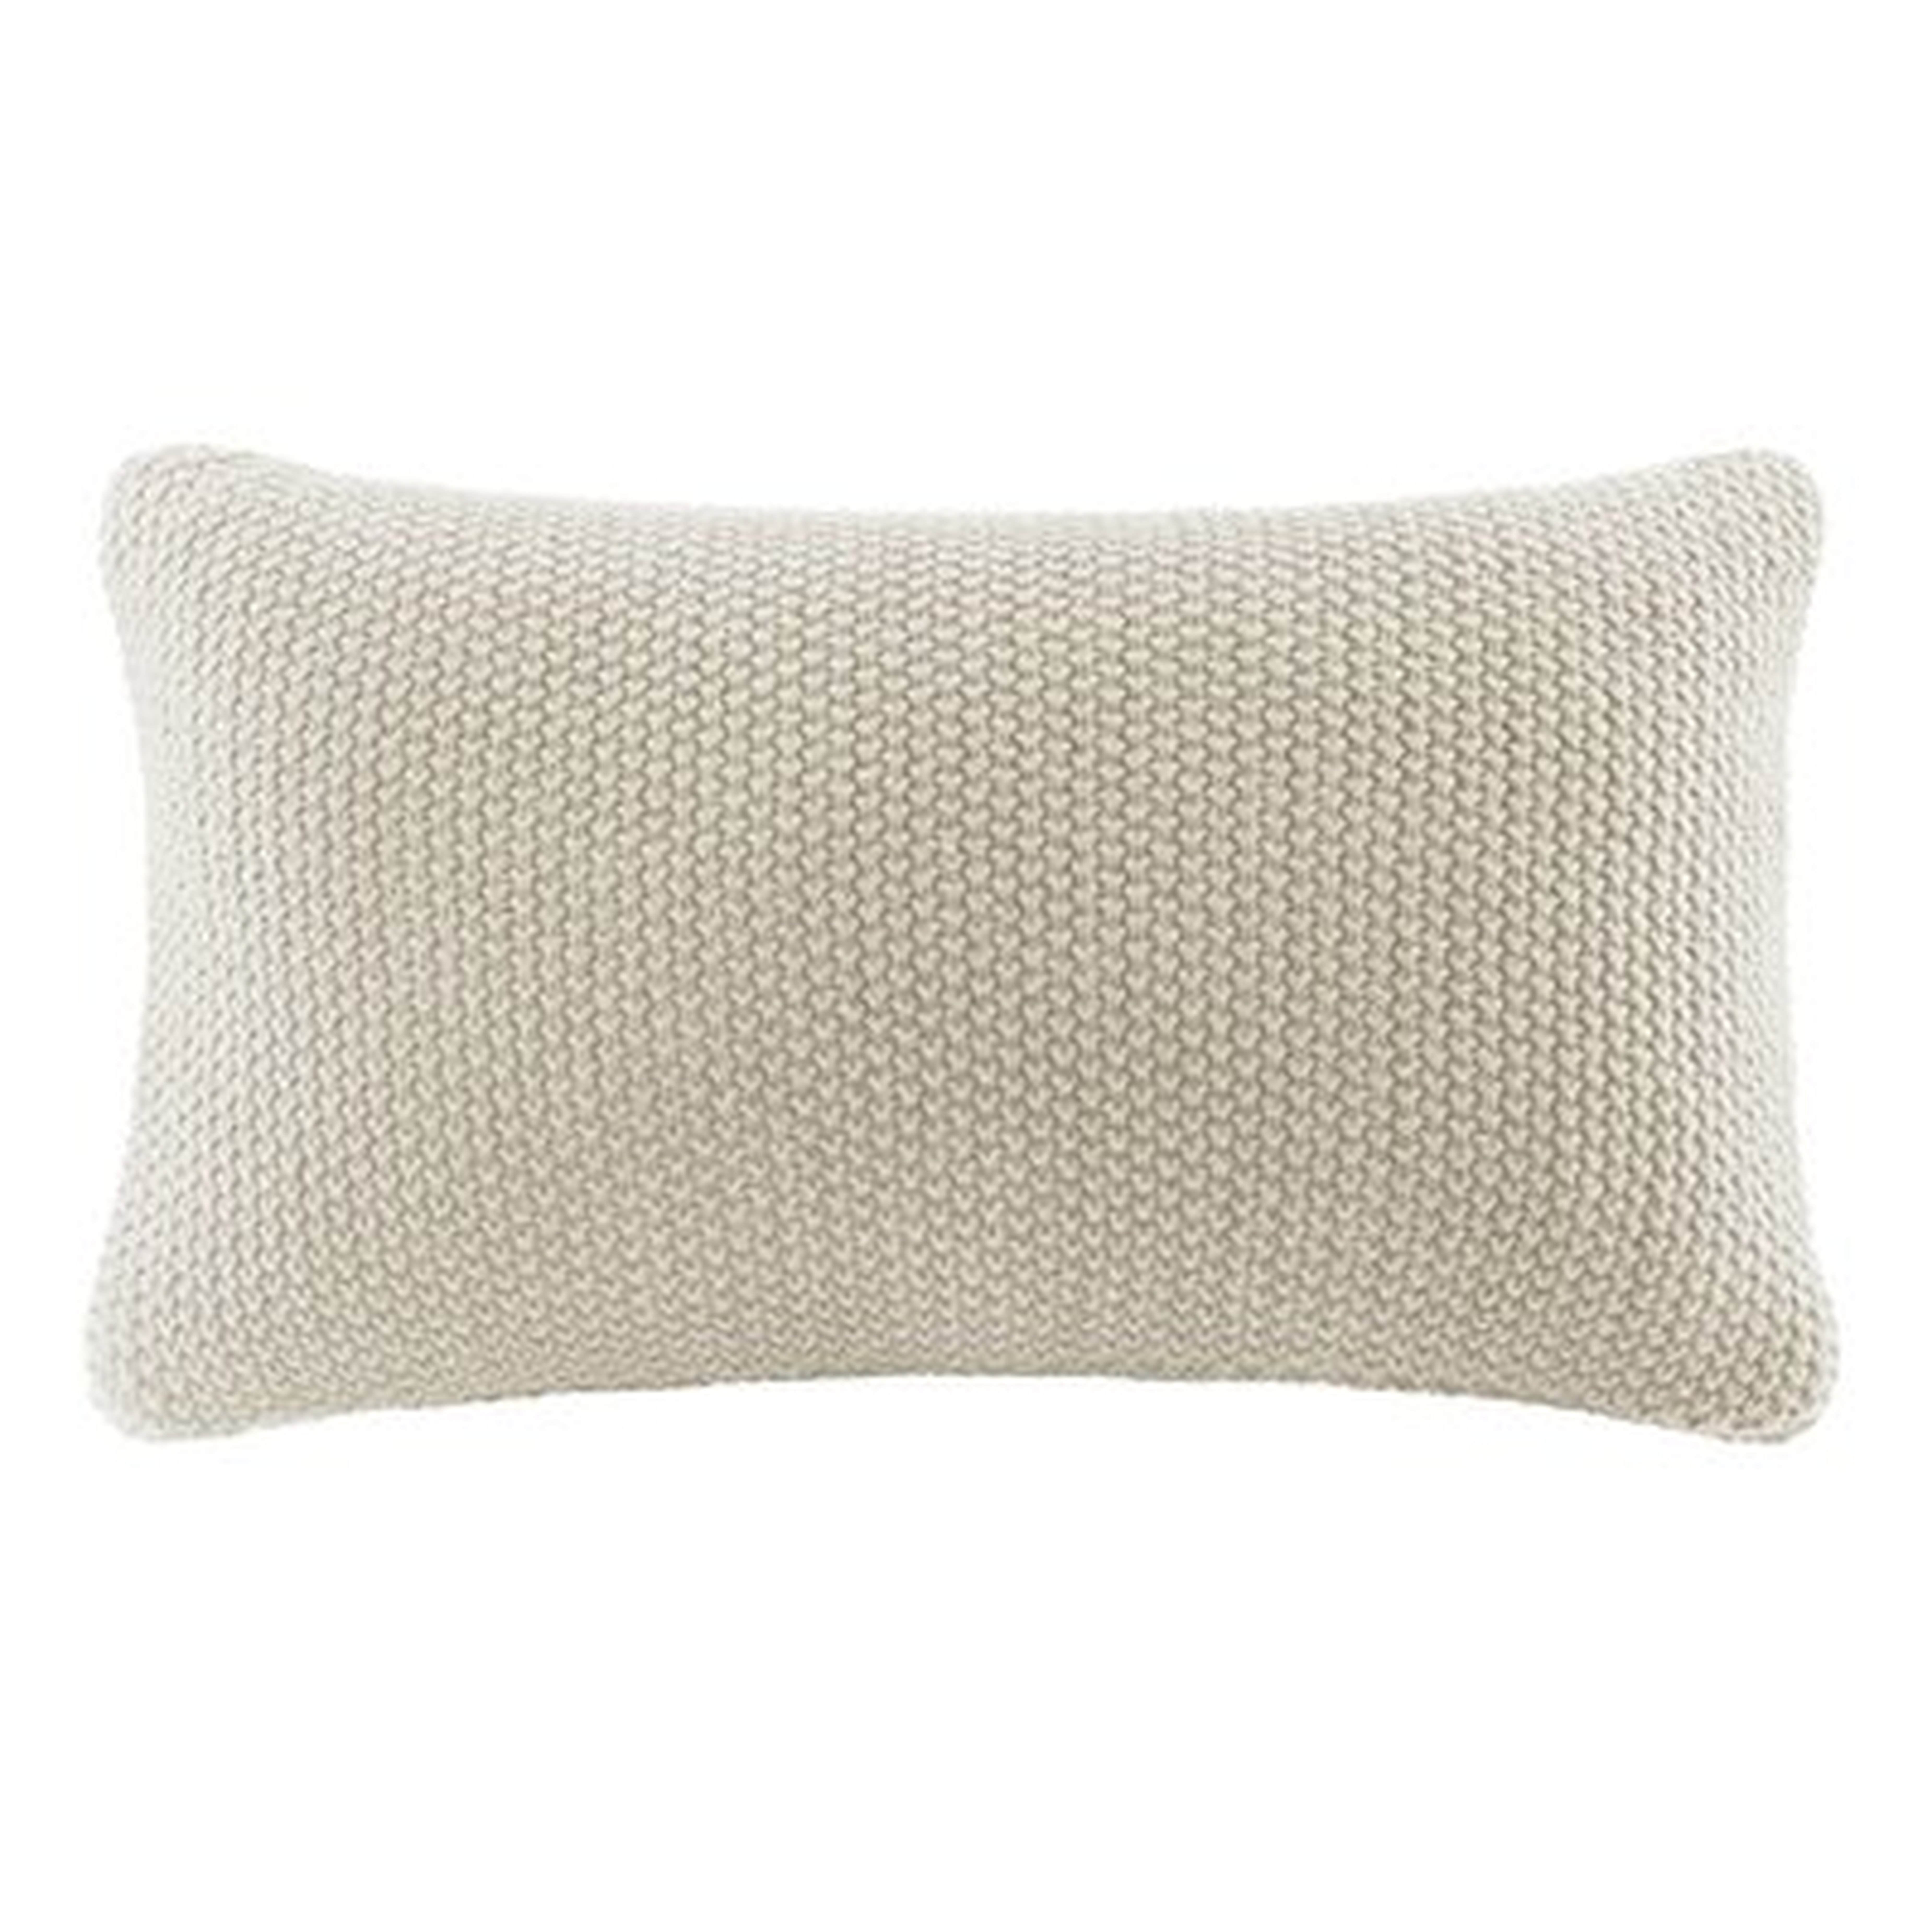 Caronni Knit Lumbar Pillow Cover - Wayfair